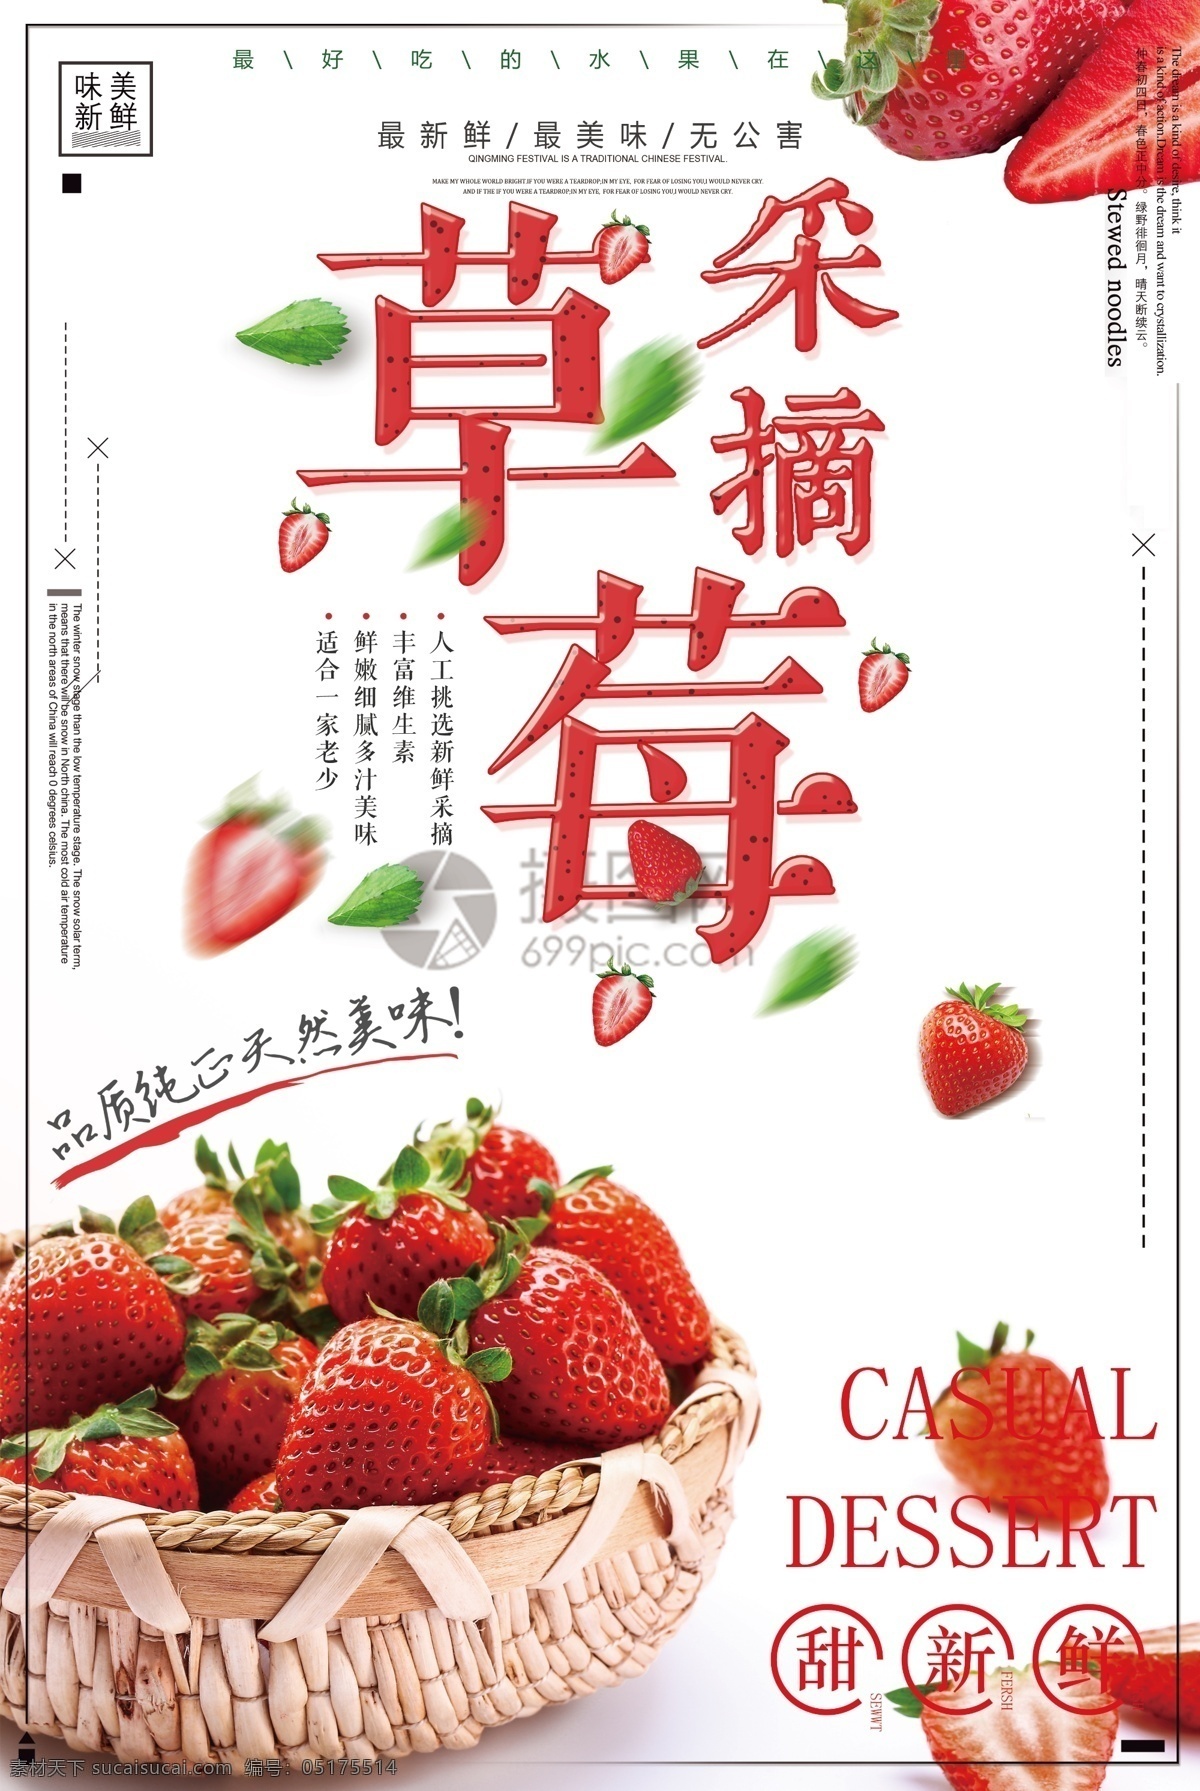 新鲜 草莓 水果 海报 新鲜水果 进口水果 热带水果 水果店 水果超市 有机水果 水果专卖 天然营养 水果海报